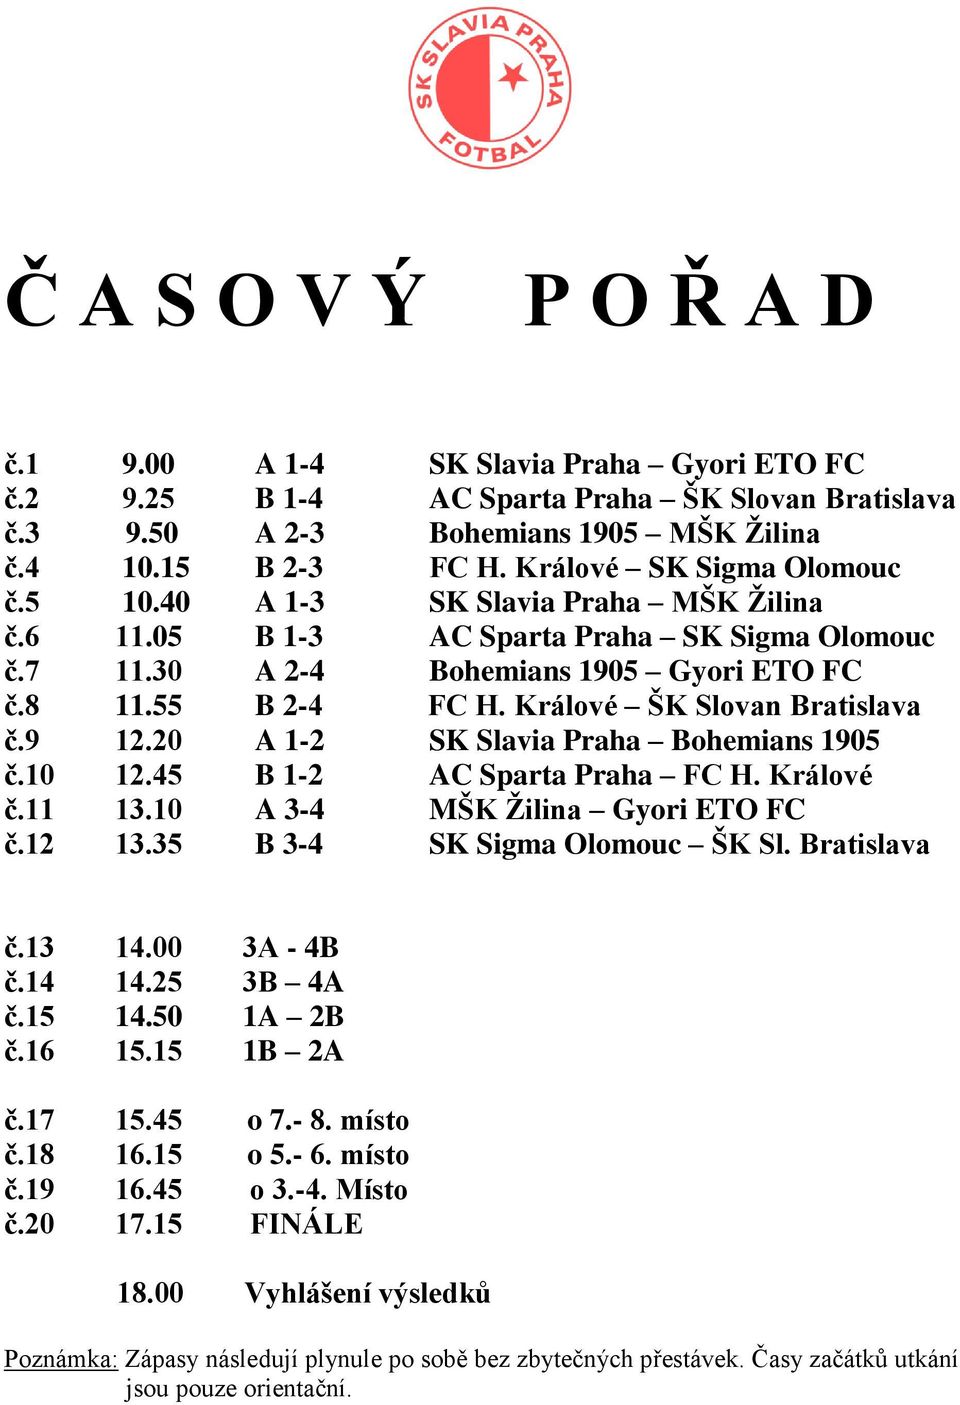 Králové ŠK Slovan Bratislava č.9 12.20 A 1-2 SK Slavia Praha Bohemians 1905 č.10 12.45 B 1-2 AC Sparta Praha FC H. Králové č.11 13.10 A 3-4 MŠK Žilina Gyori ETO FC č.12 13.